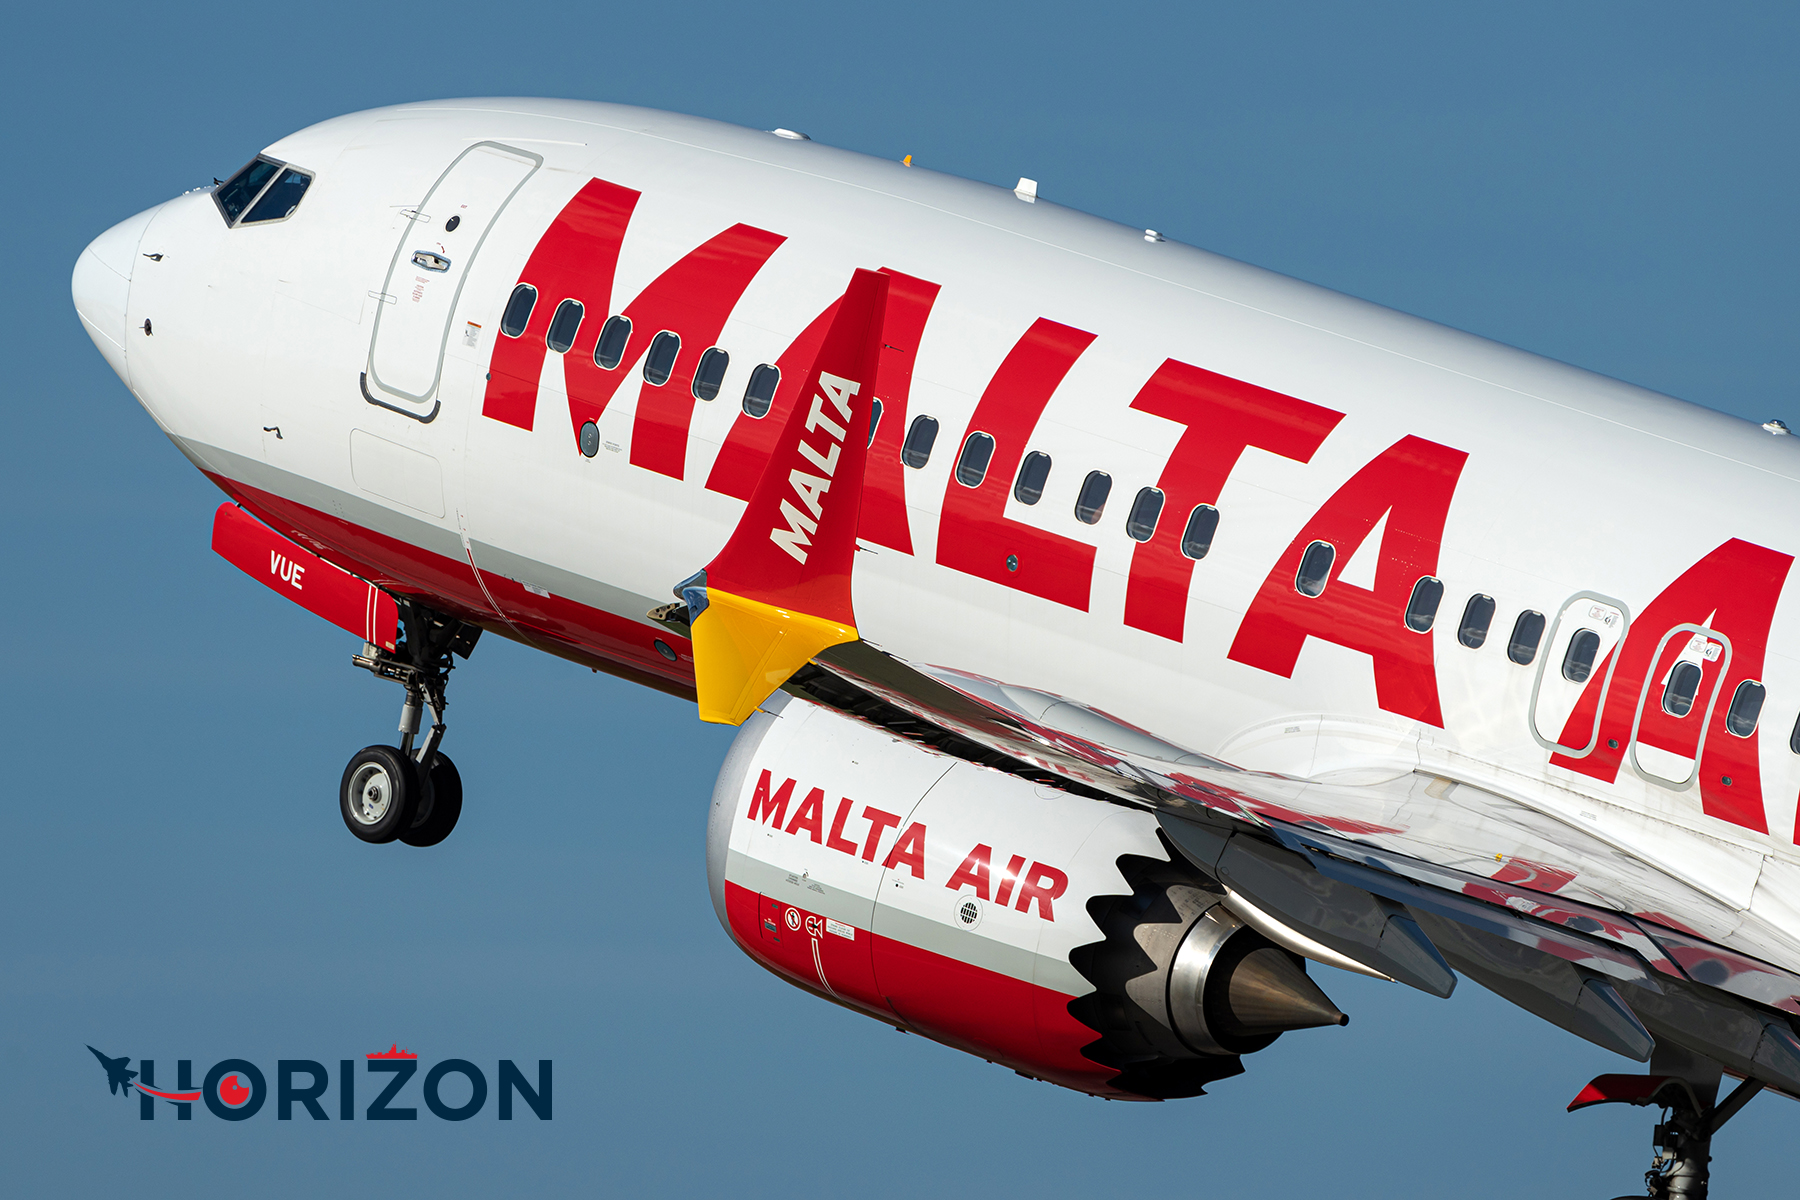 Malta Air Boeing 737 MAX 8-200 9H-VUE. Photo: Christian Camilleri